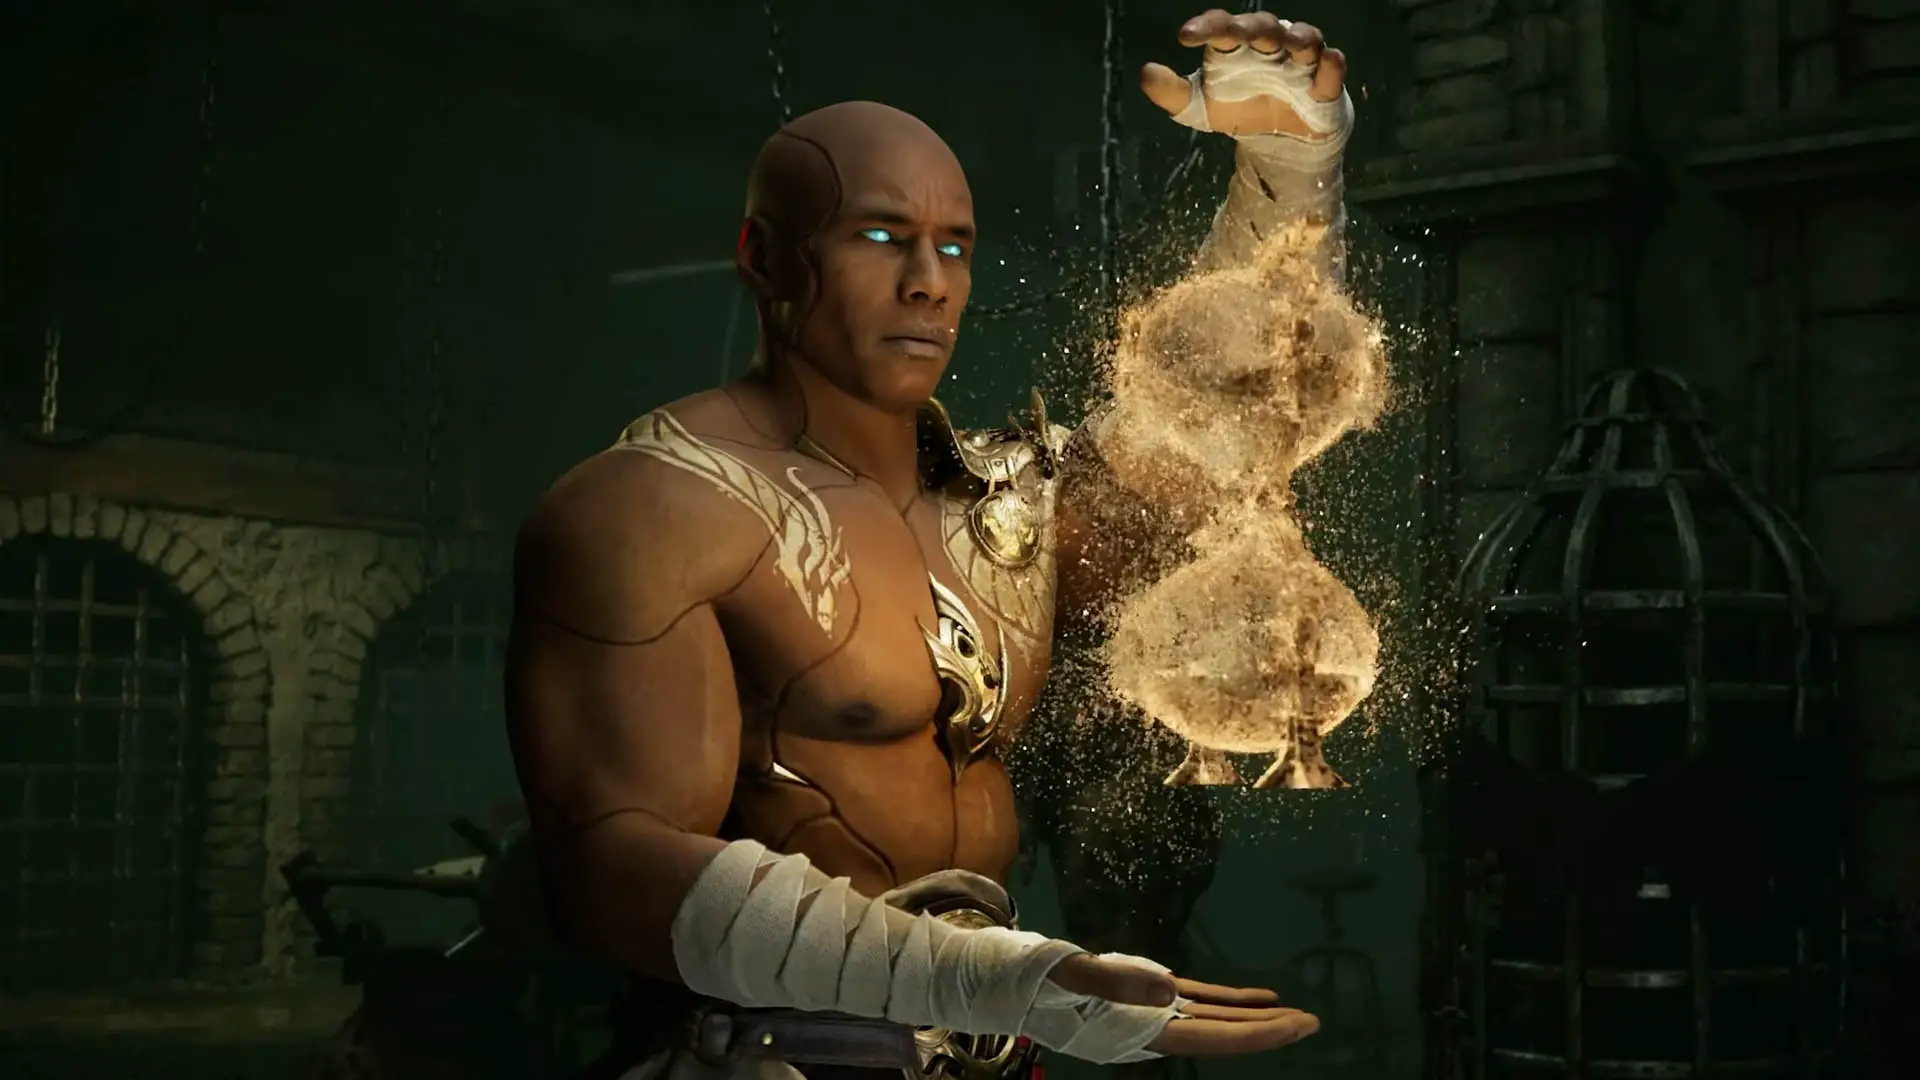 Герас подтвержден для Mortal Kombat 1 с новым трейлером «Хранители времени»